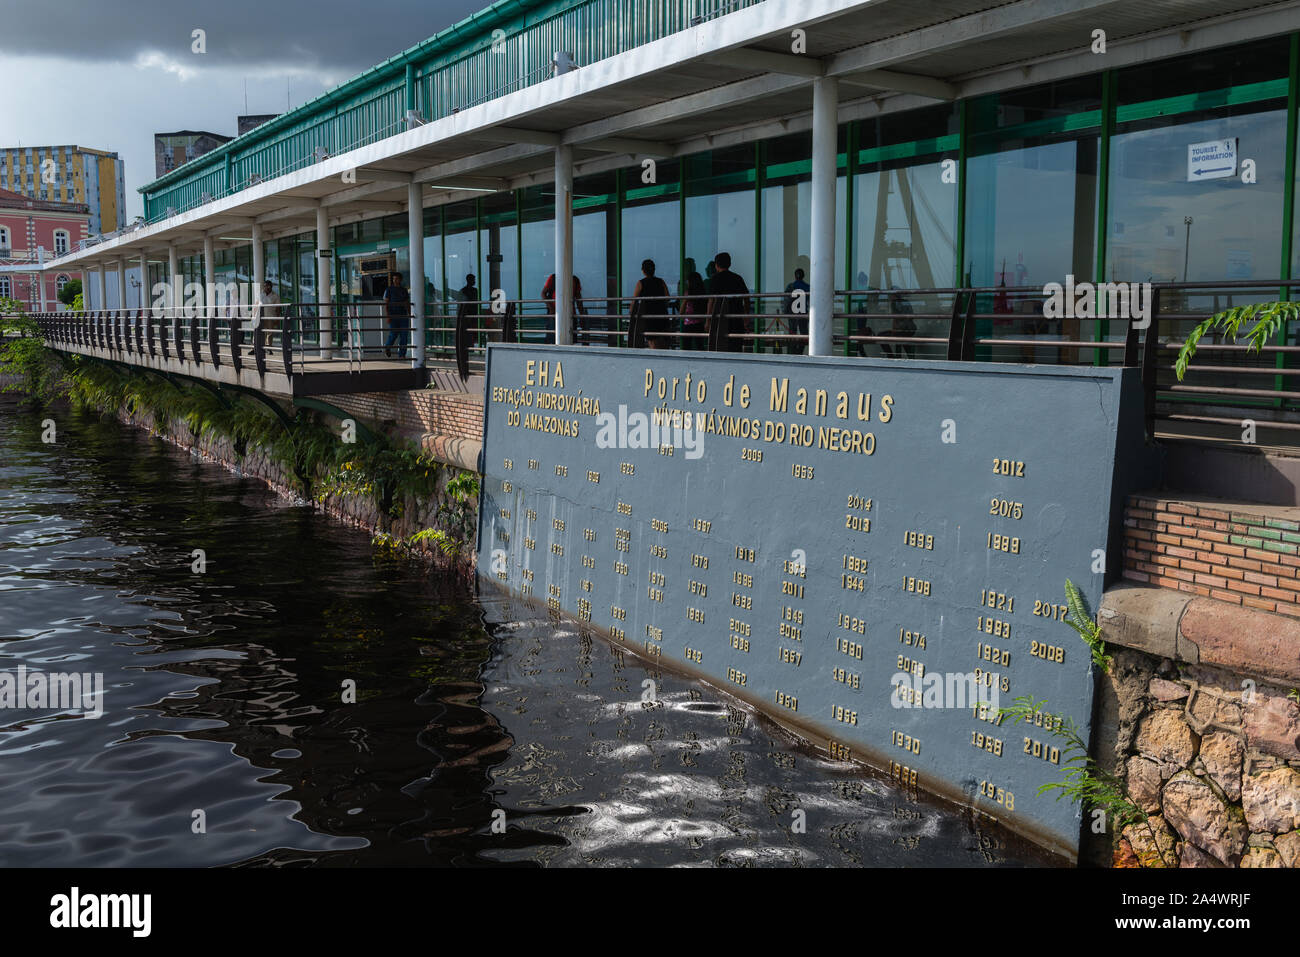 Le Flutante Porto ou flottante habour, montrant la carte de l'eau élevé de marques différentes années, Manaus, l'Amazone, Brésil, Amérique Latine Banque D'Images